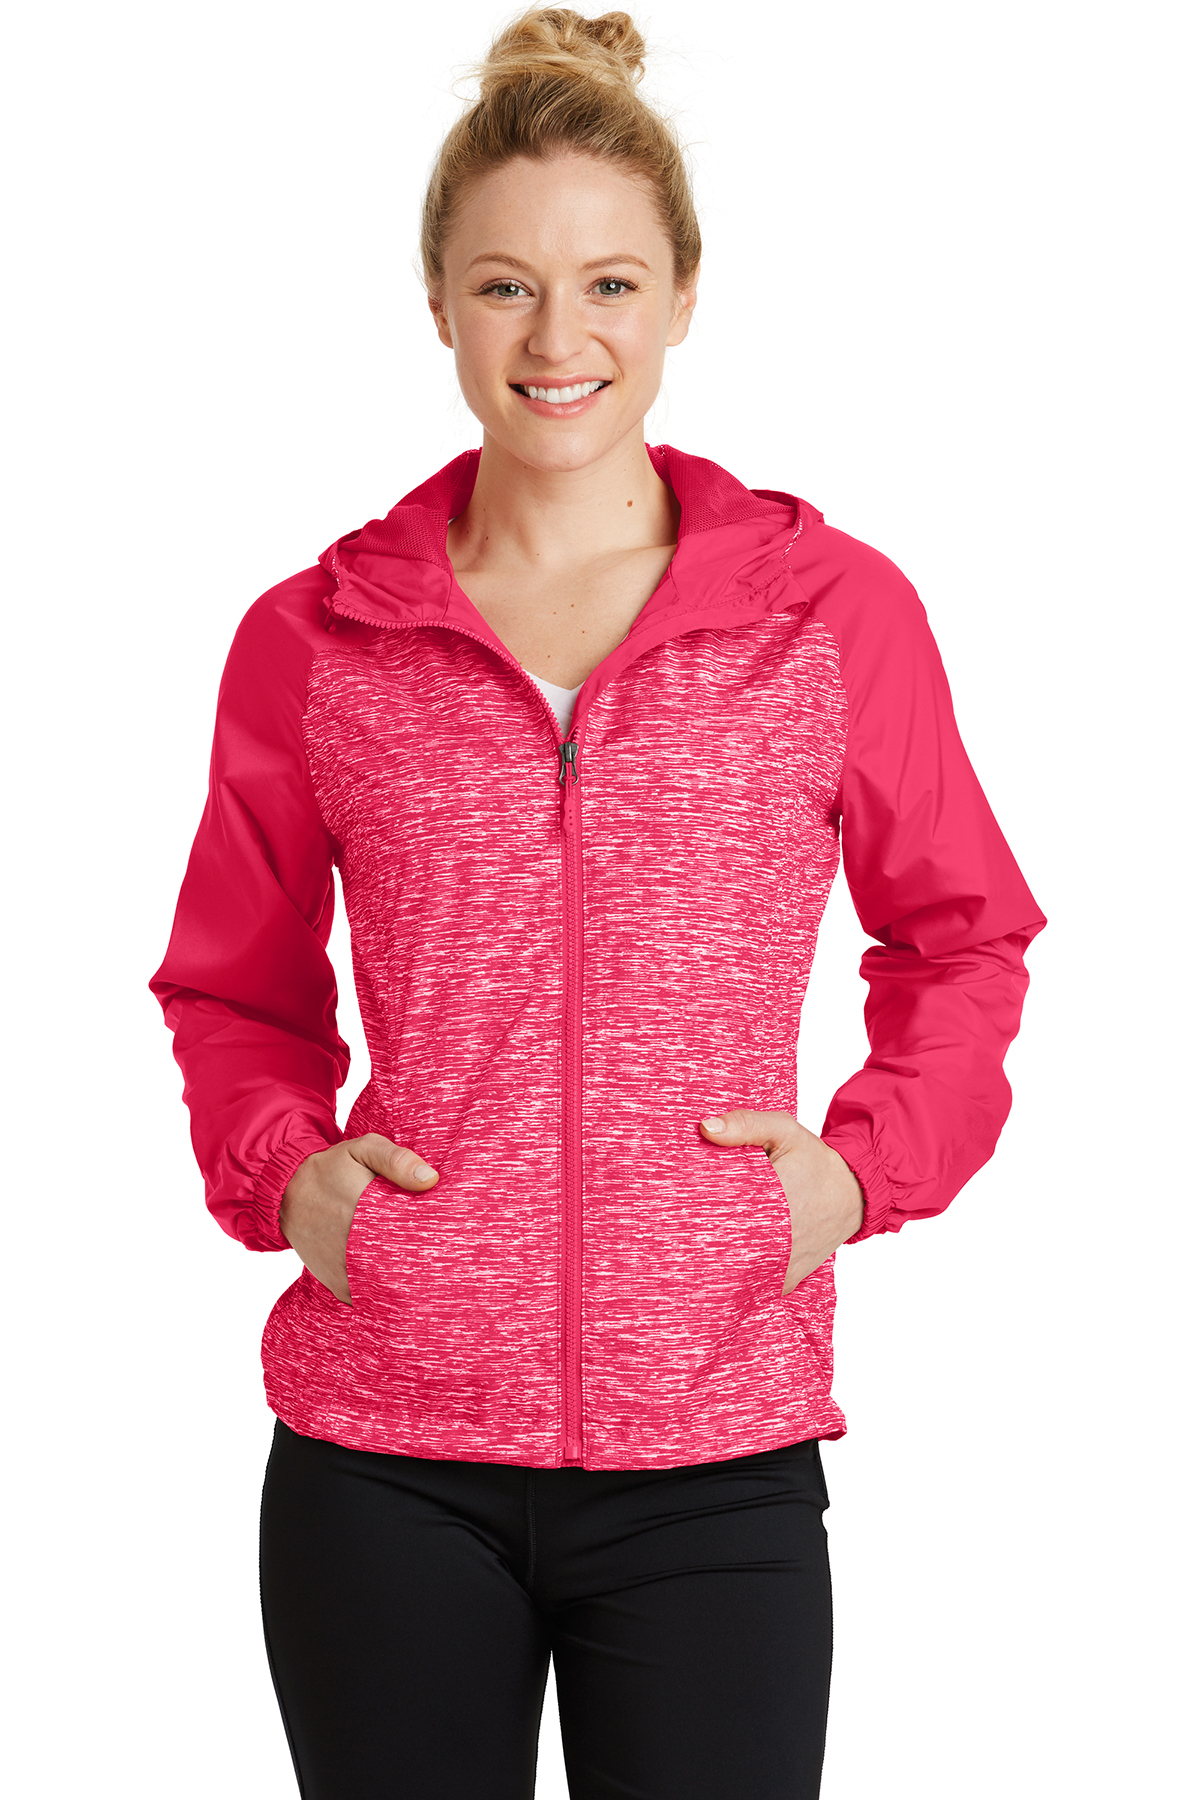 Colorblock | Wind Hooded Heather Raglan Product Sport-Tek Ladies | Jacket Sport-Tek